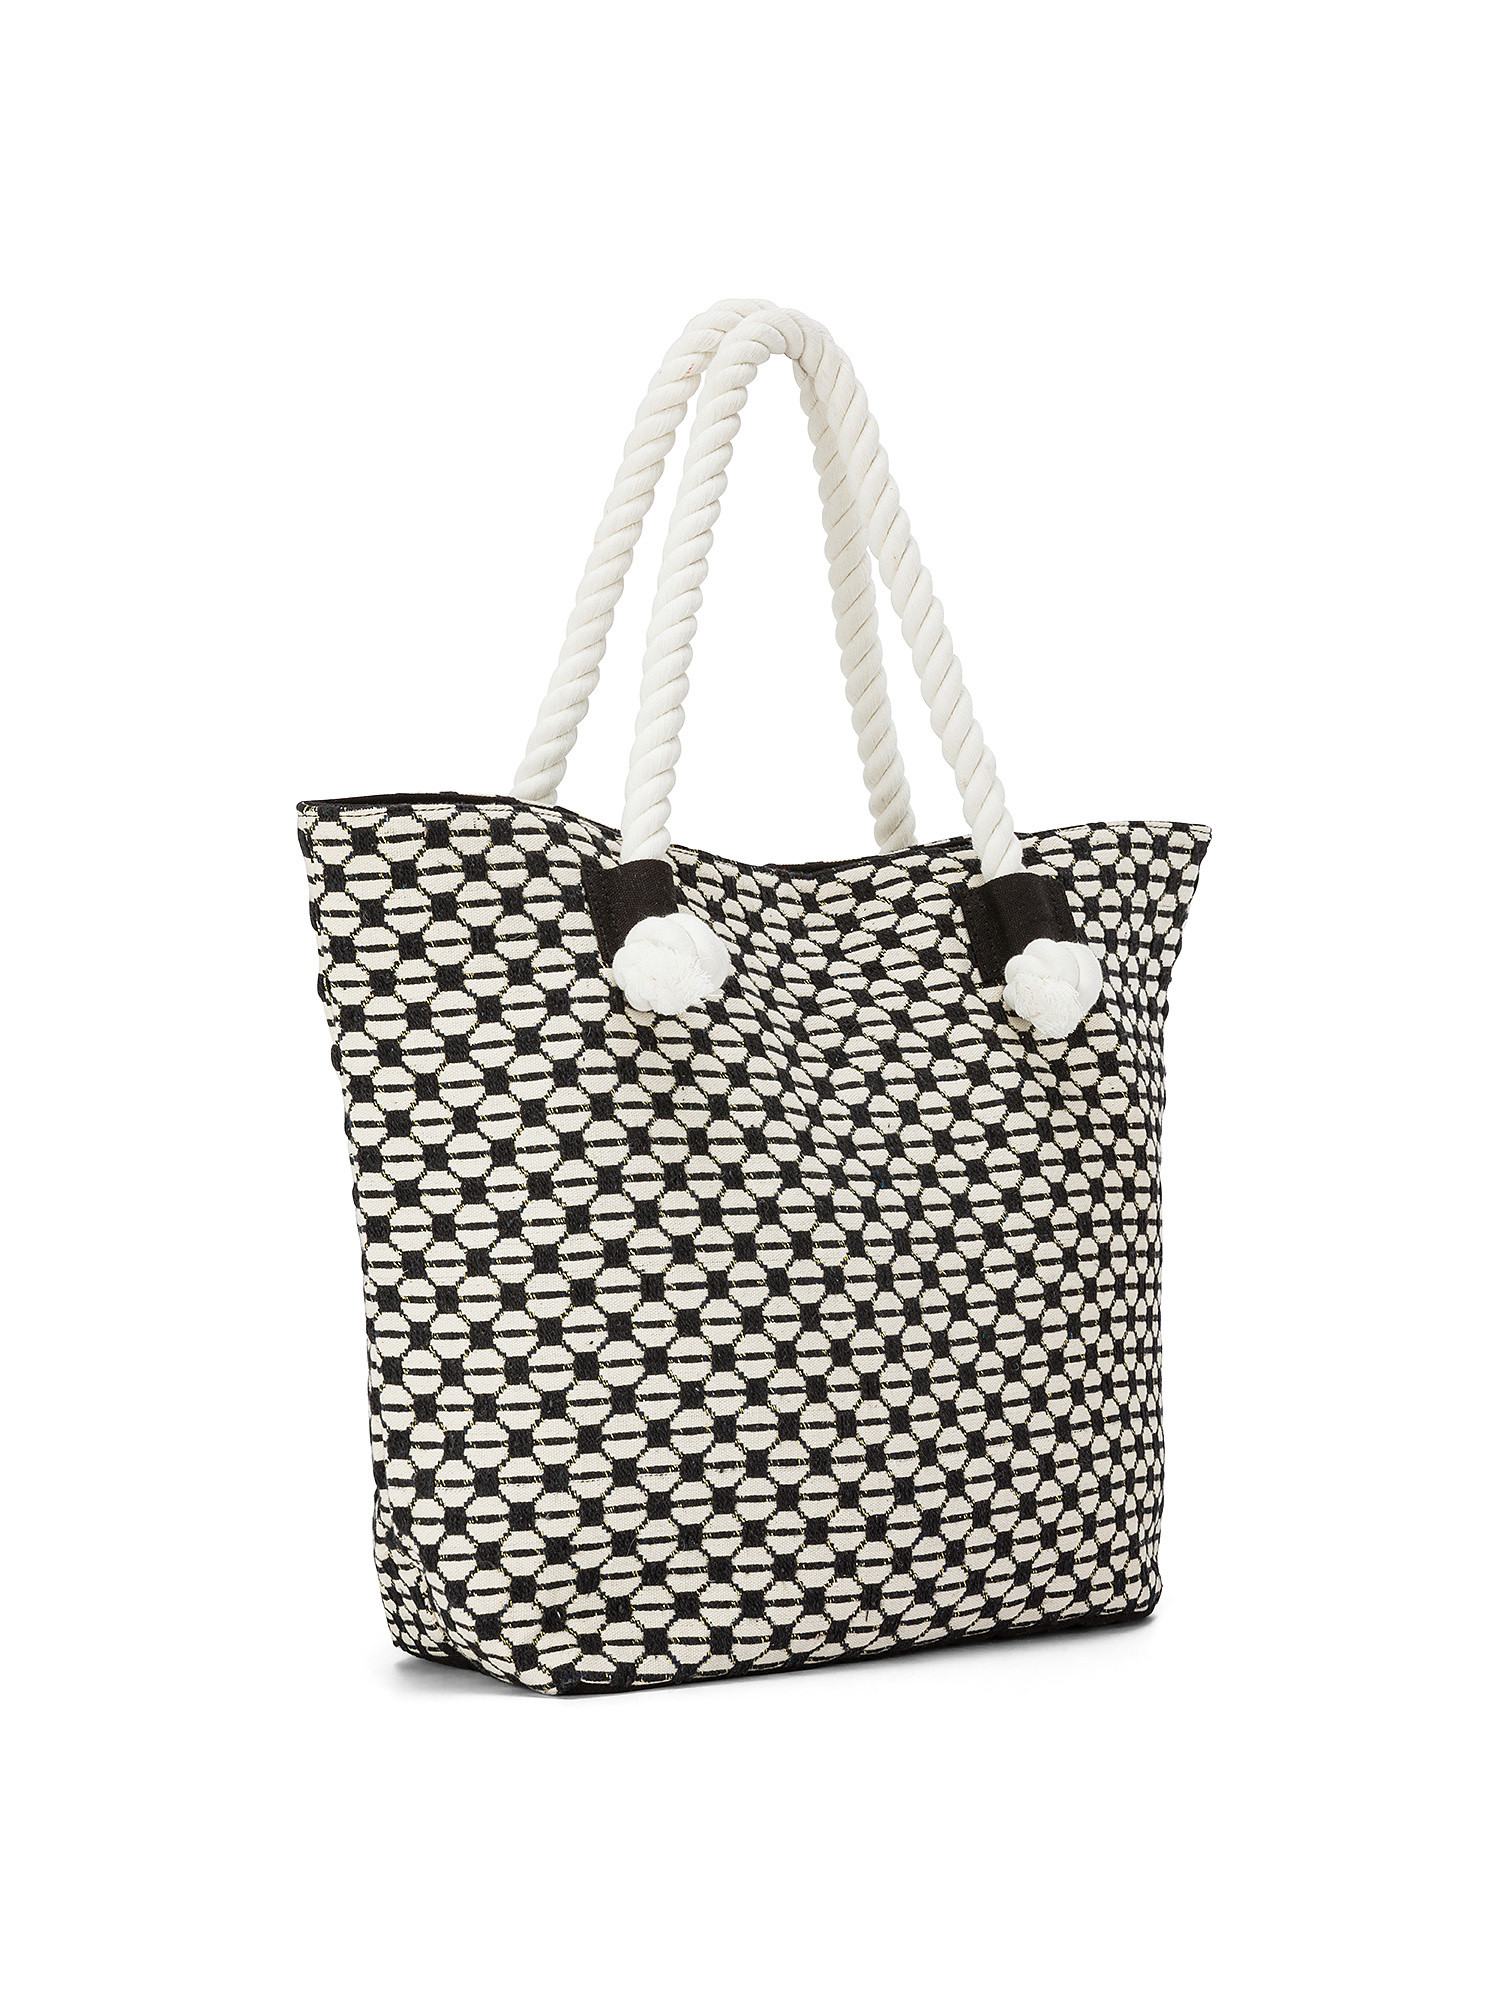 Koan - Shopping bag in tessuto jacquard, Bianco, large image number 1